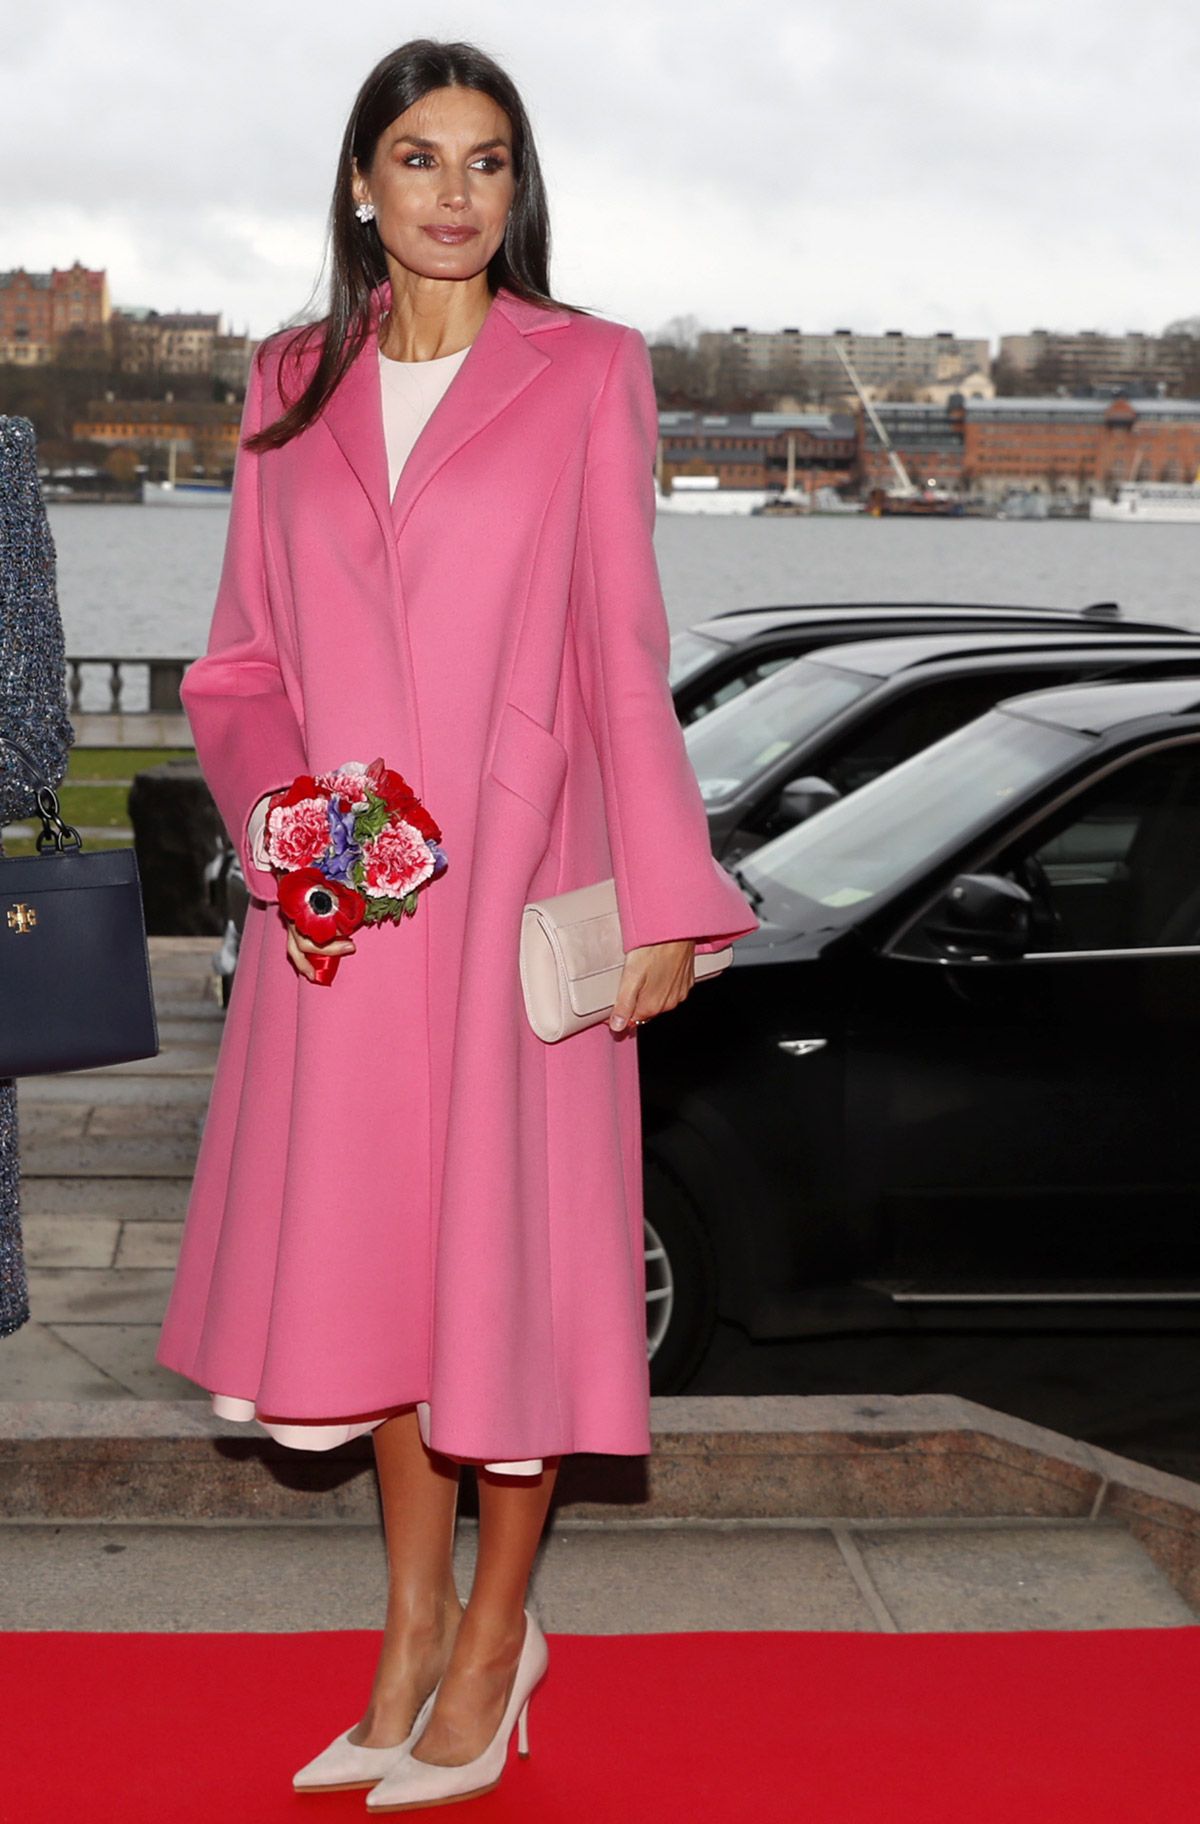 La reina Letizia, espectacular con abrigo rosa